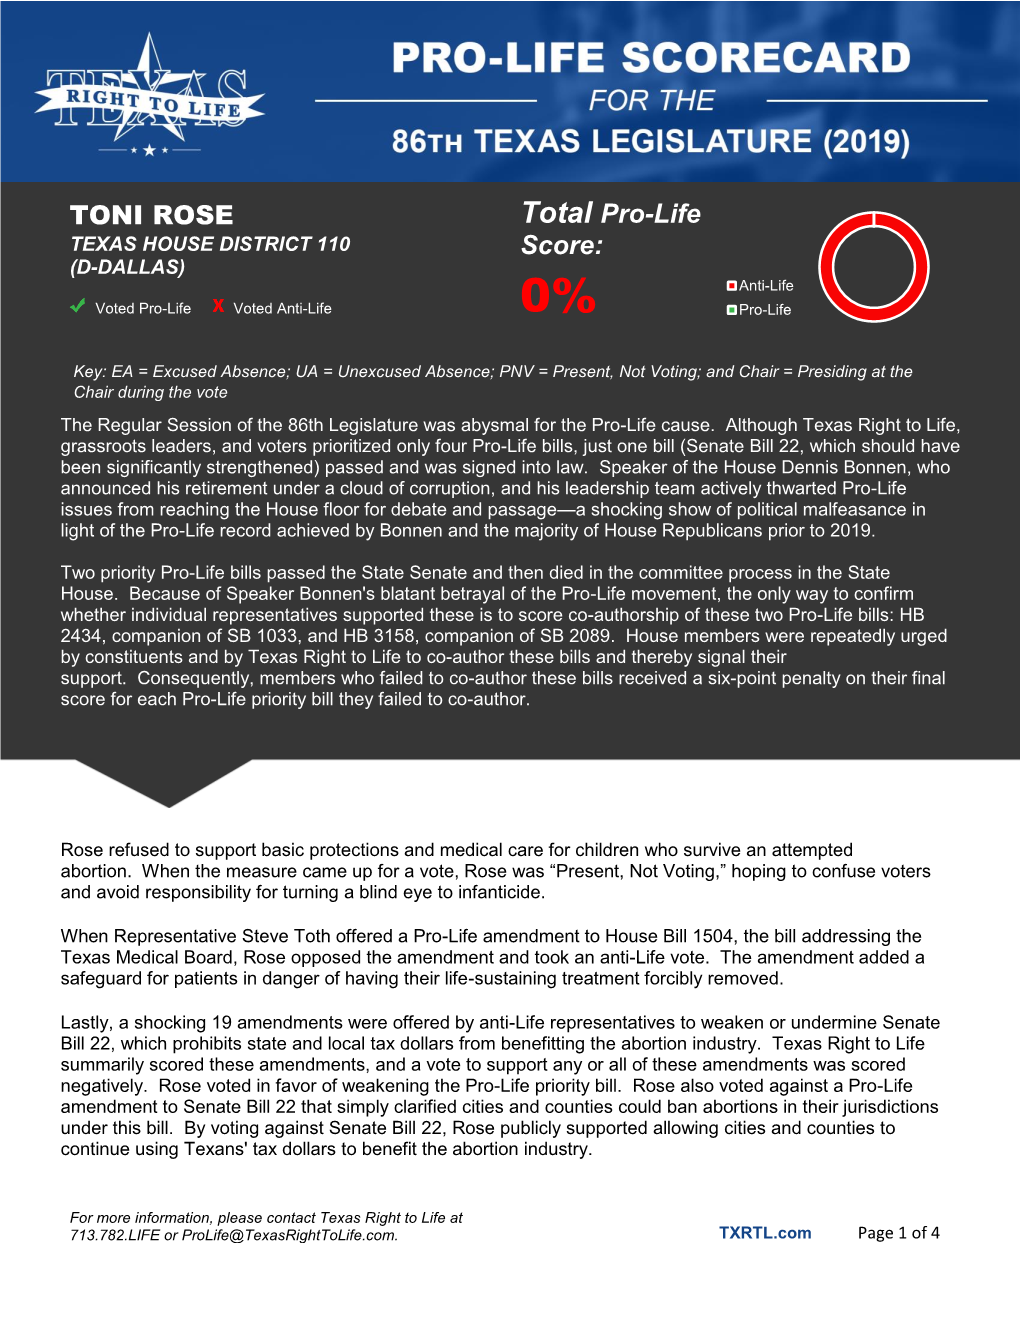 TONI ROSE Total Pro-Life Score